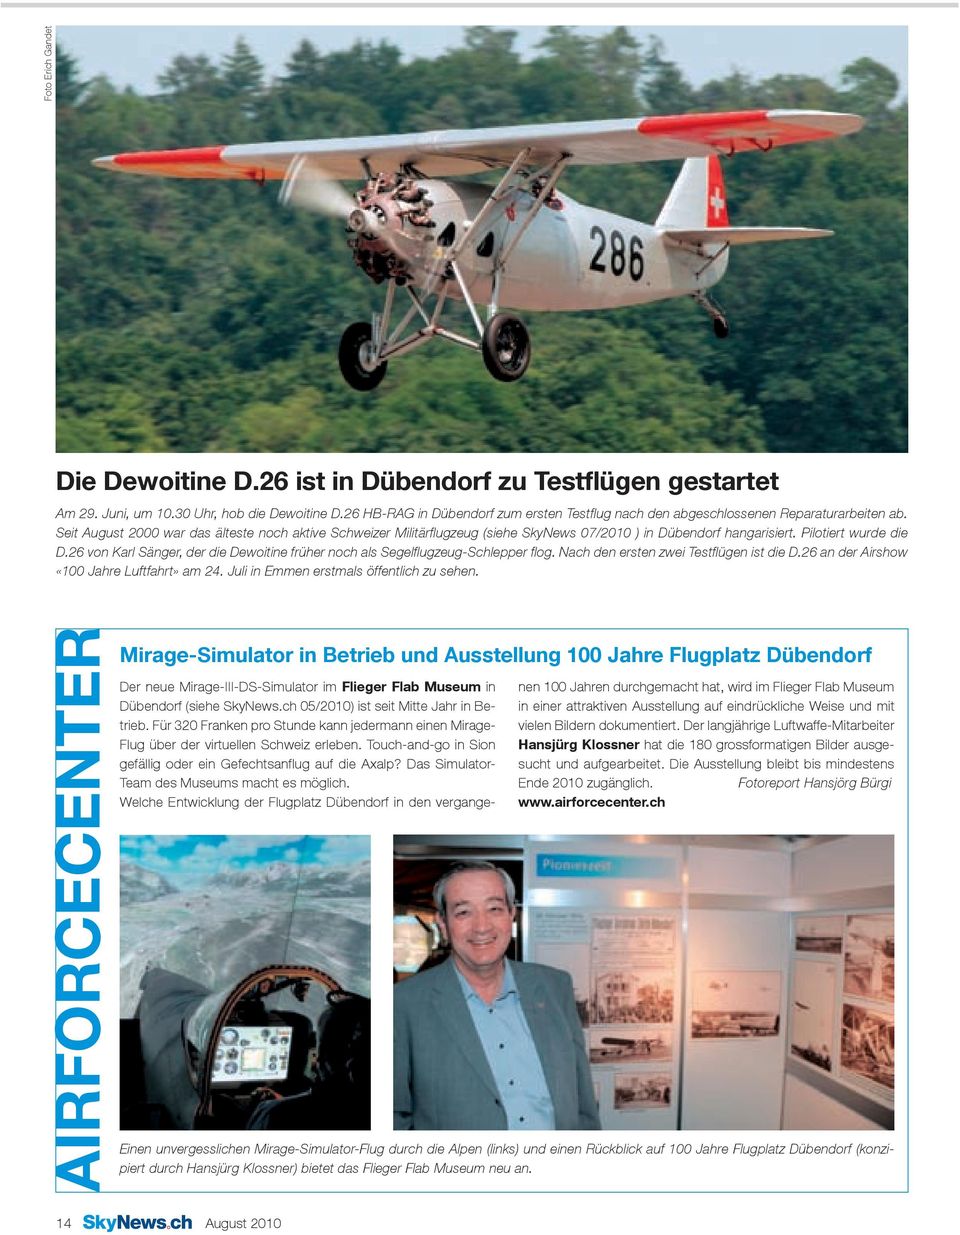 Seit August 2000 war das älteste noch aktive Schweizer Militärflugzeug (siehe SkyNews 07/2010 ) in Dübendorf hangarisiert. Pilotiert wurde die D.